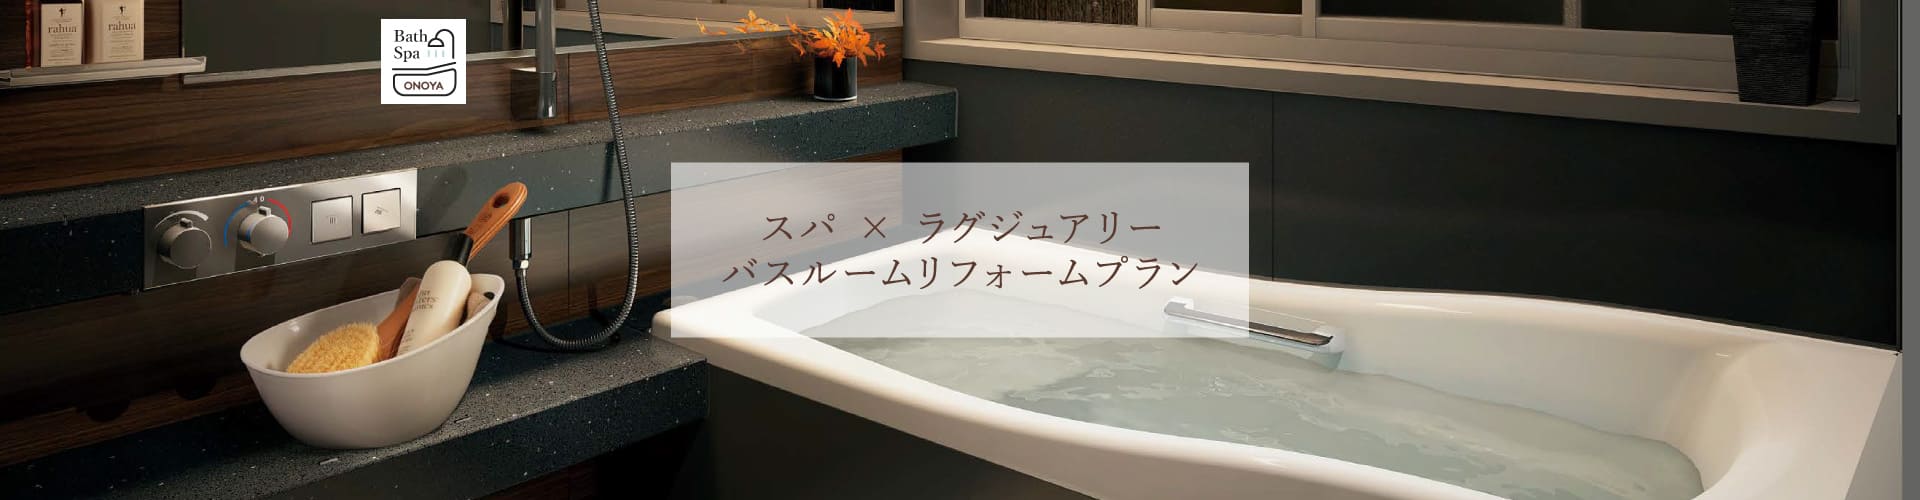 お風呂・バスルームのリフォームならONOYA東京吉祥寺ショールーム